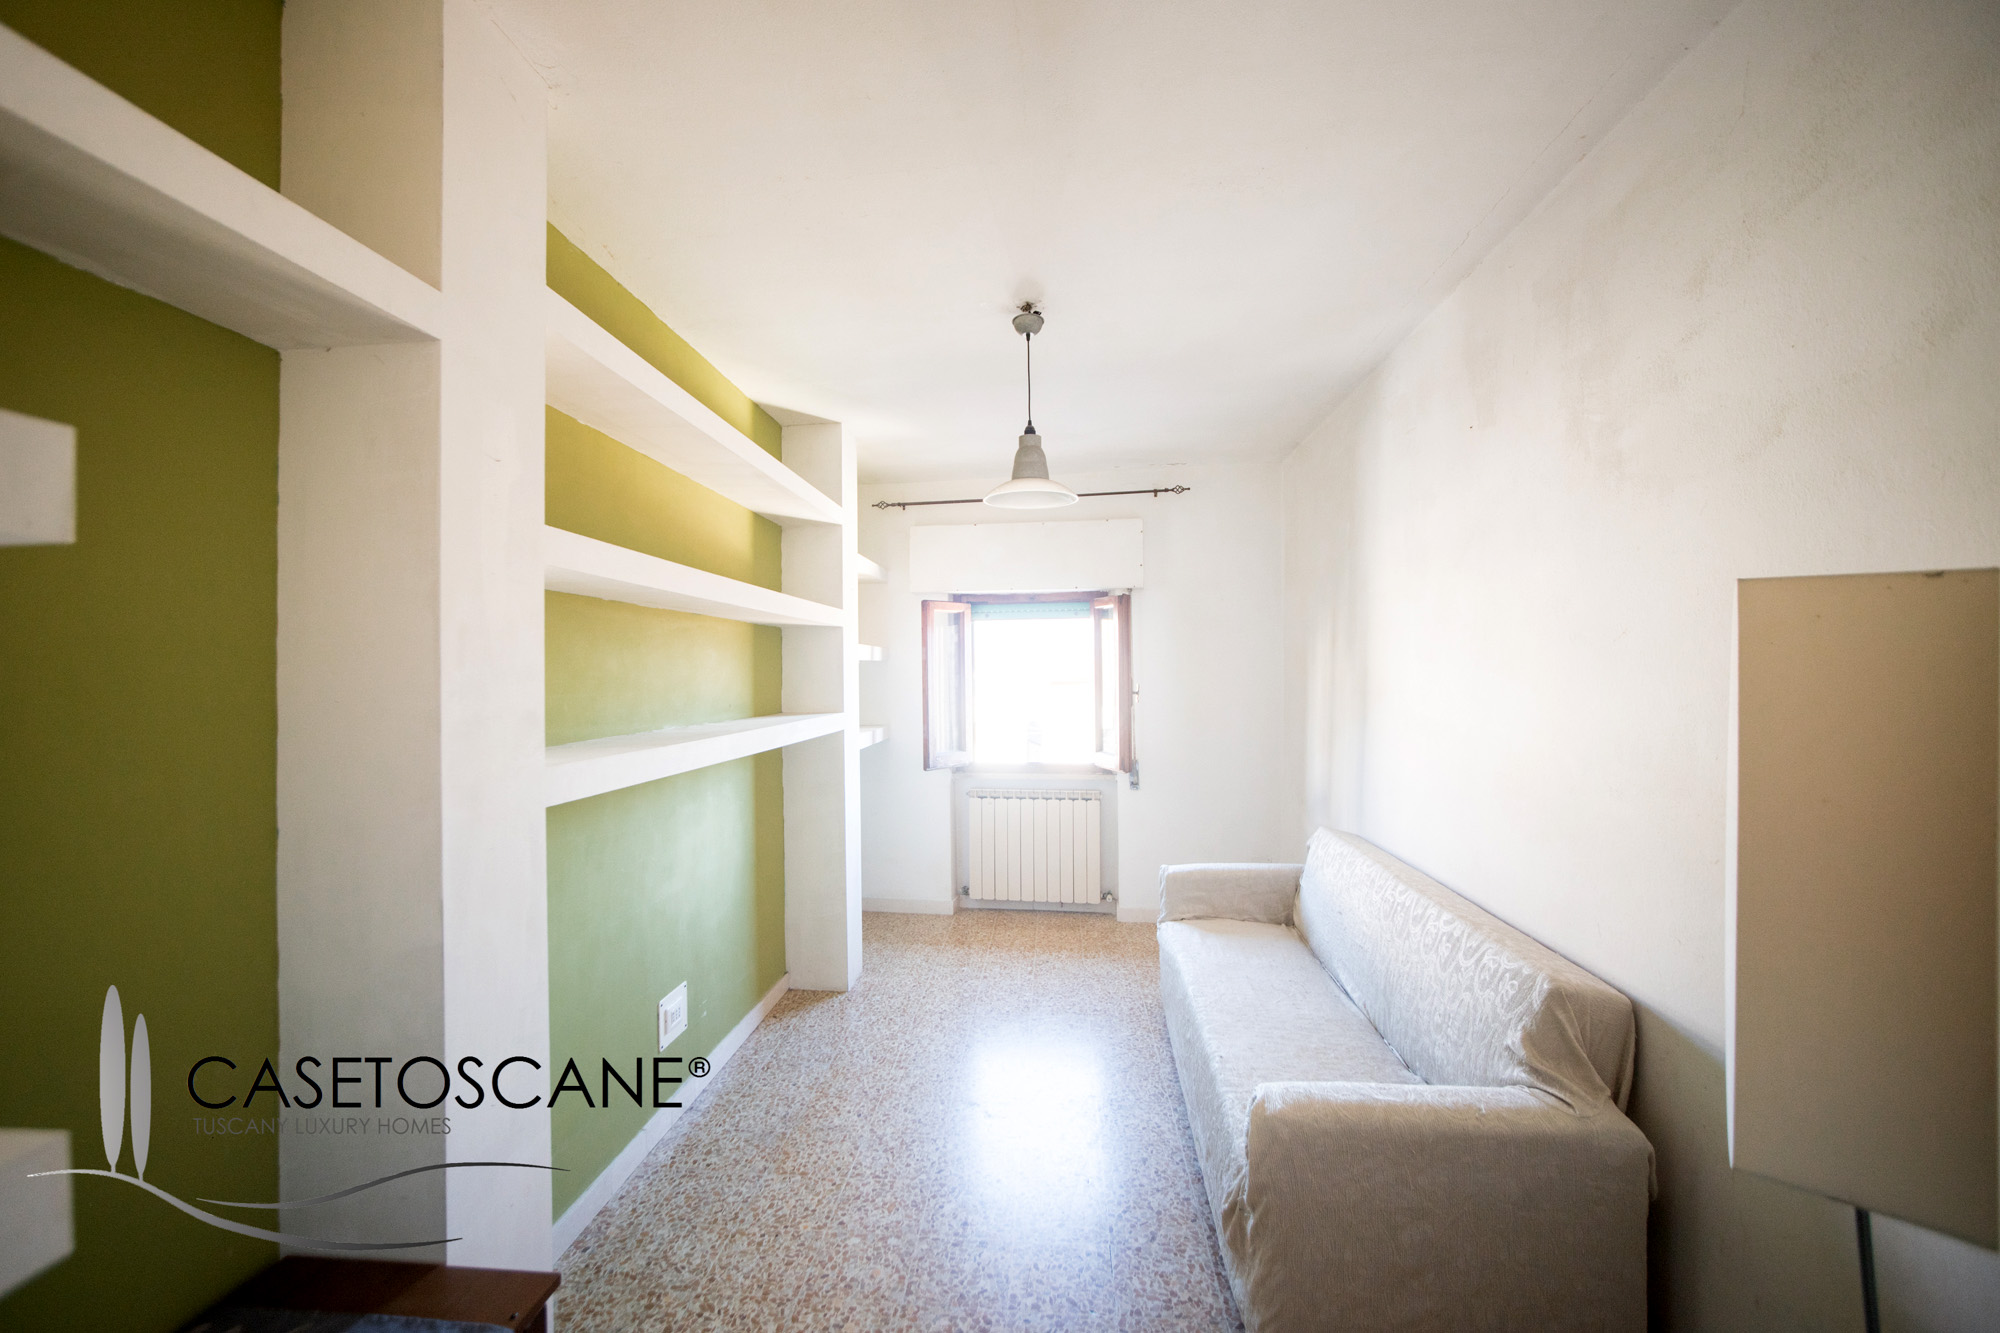 3133 - Ottimo appartamento di mq.105 al 2°P con torretta, in palazzo d'epoca nel centro storico di Bucine (AR).